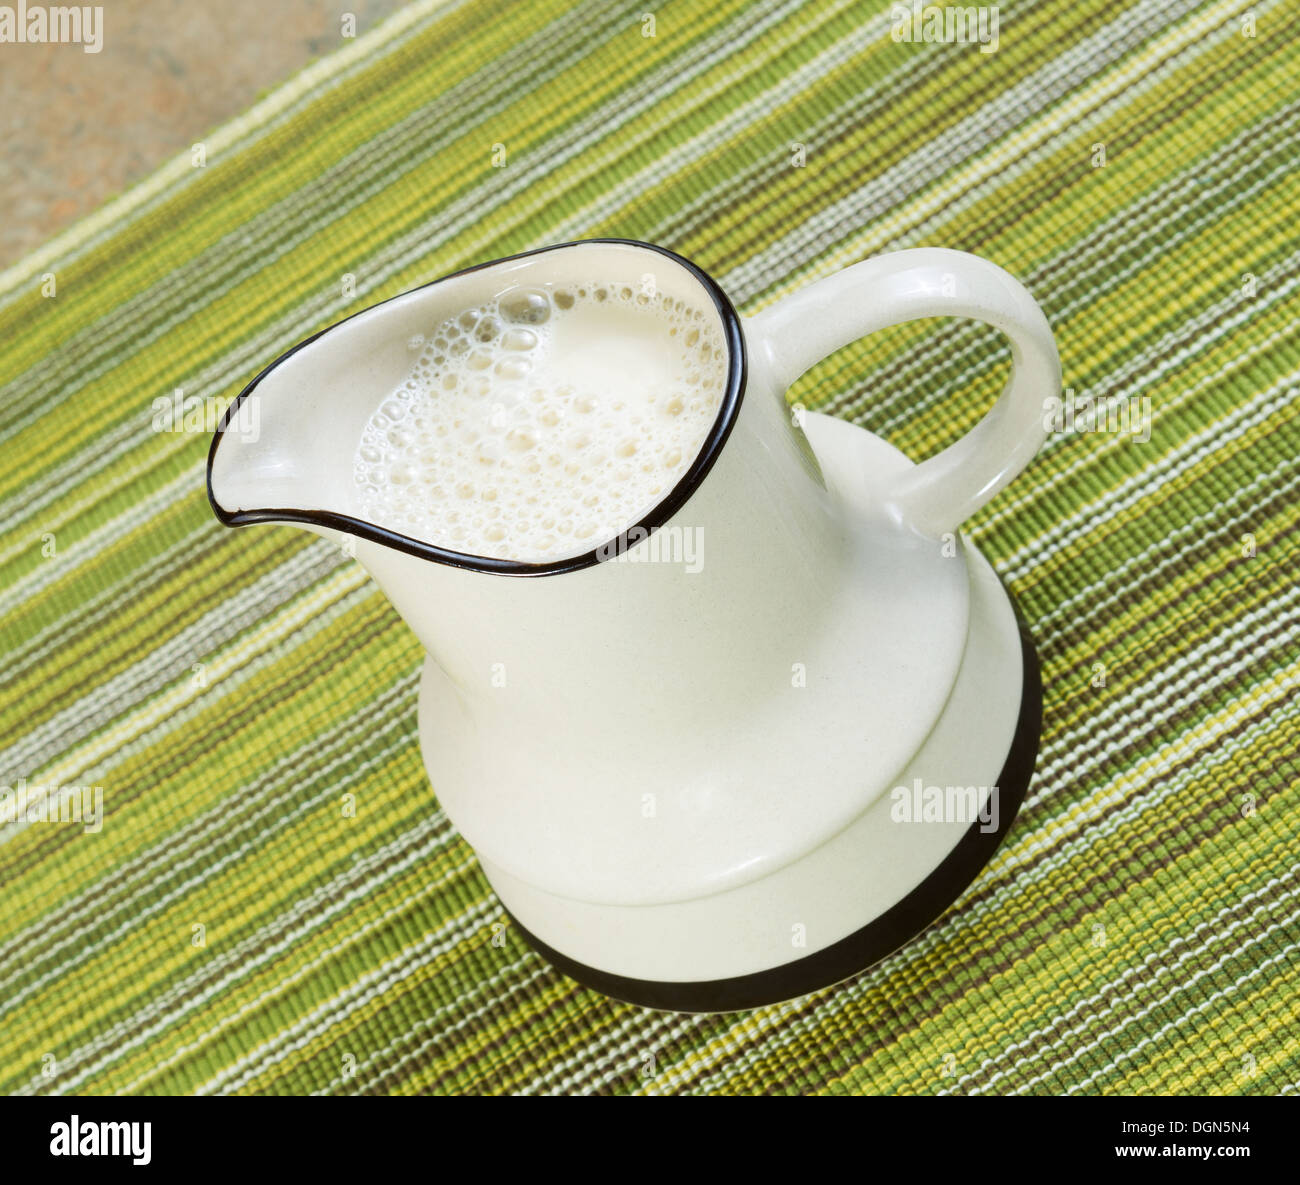 Photo inclinée de lait de soja en pichet blanc avec un chiffon sous la table verte Banque D'Images